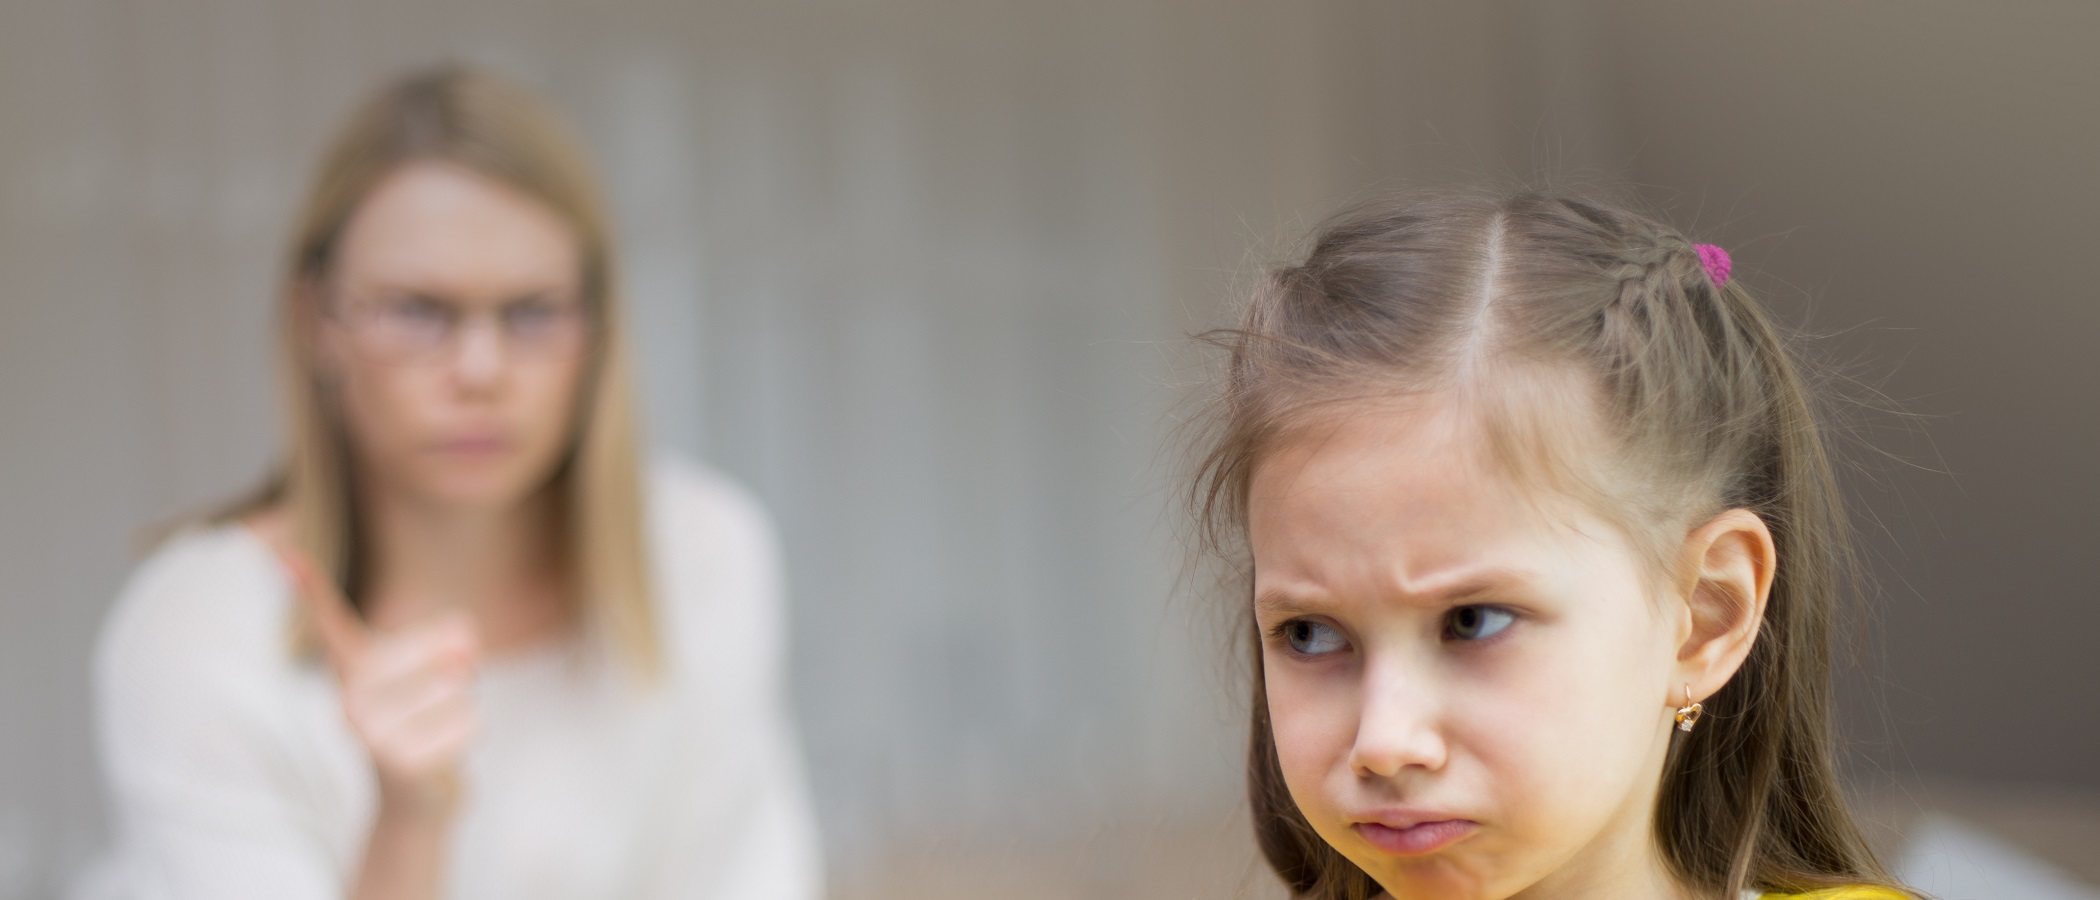 6 excusas de los padres para no disciplinar a sus hijos